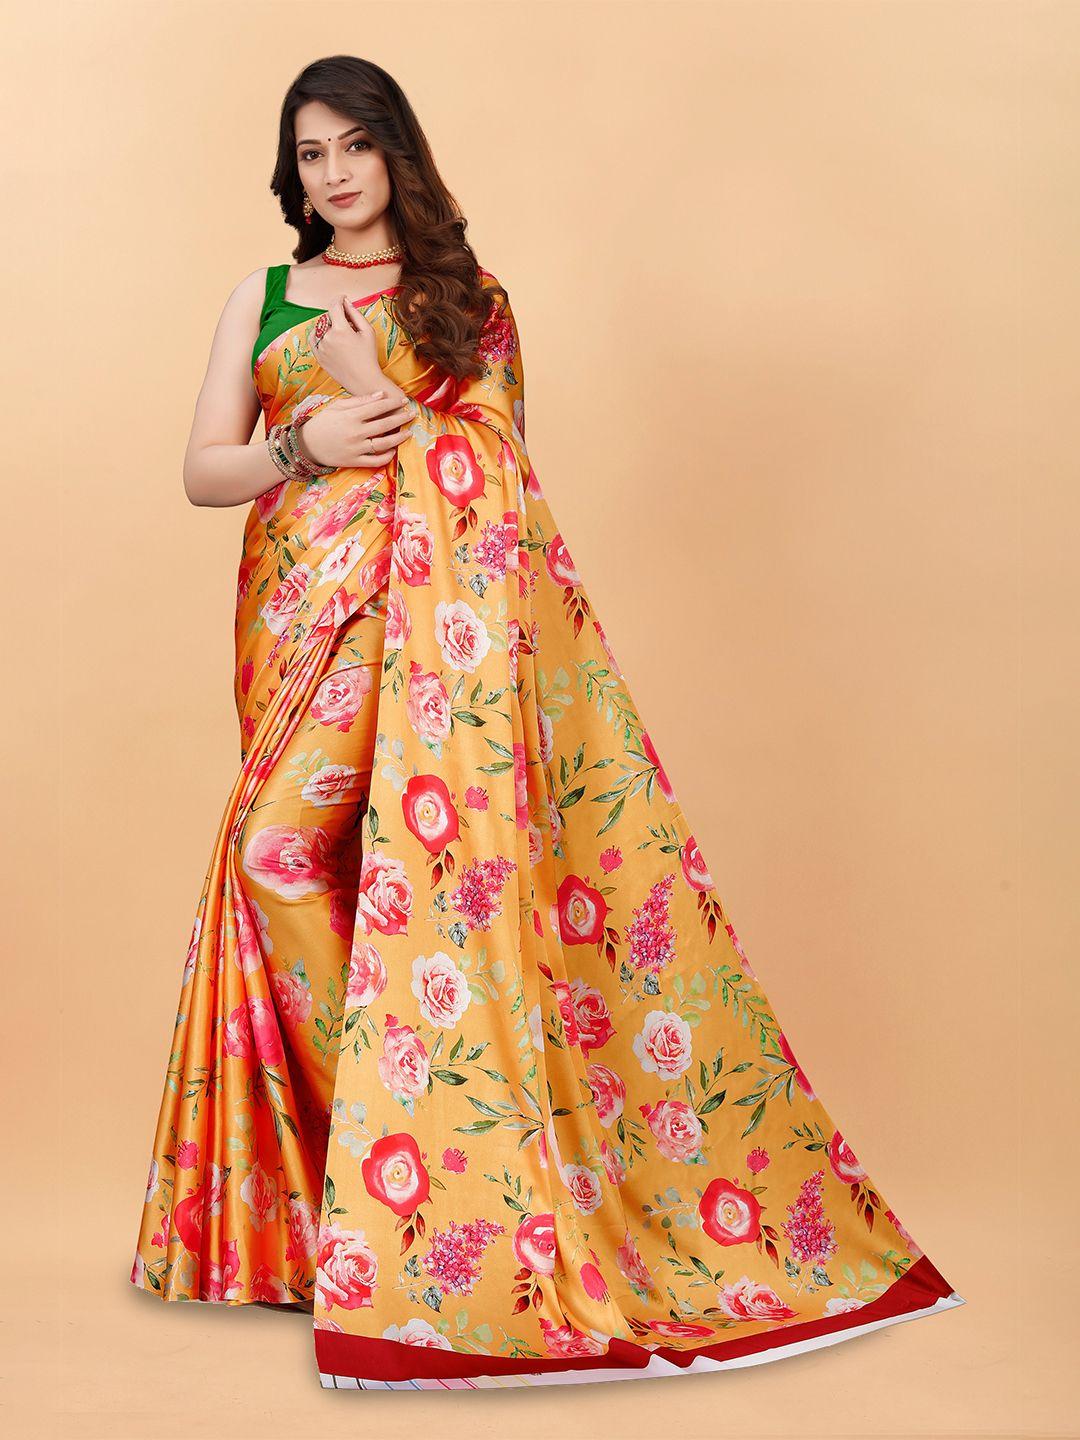 bansari textiles floral printed satin saree